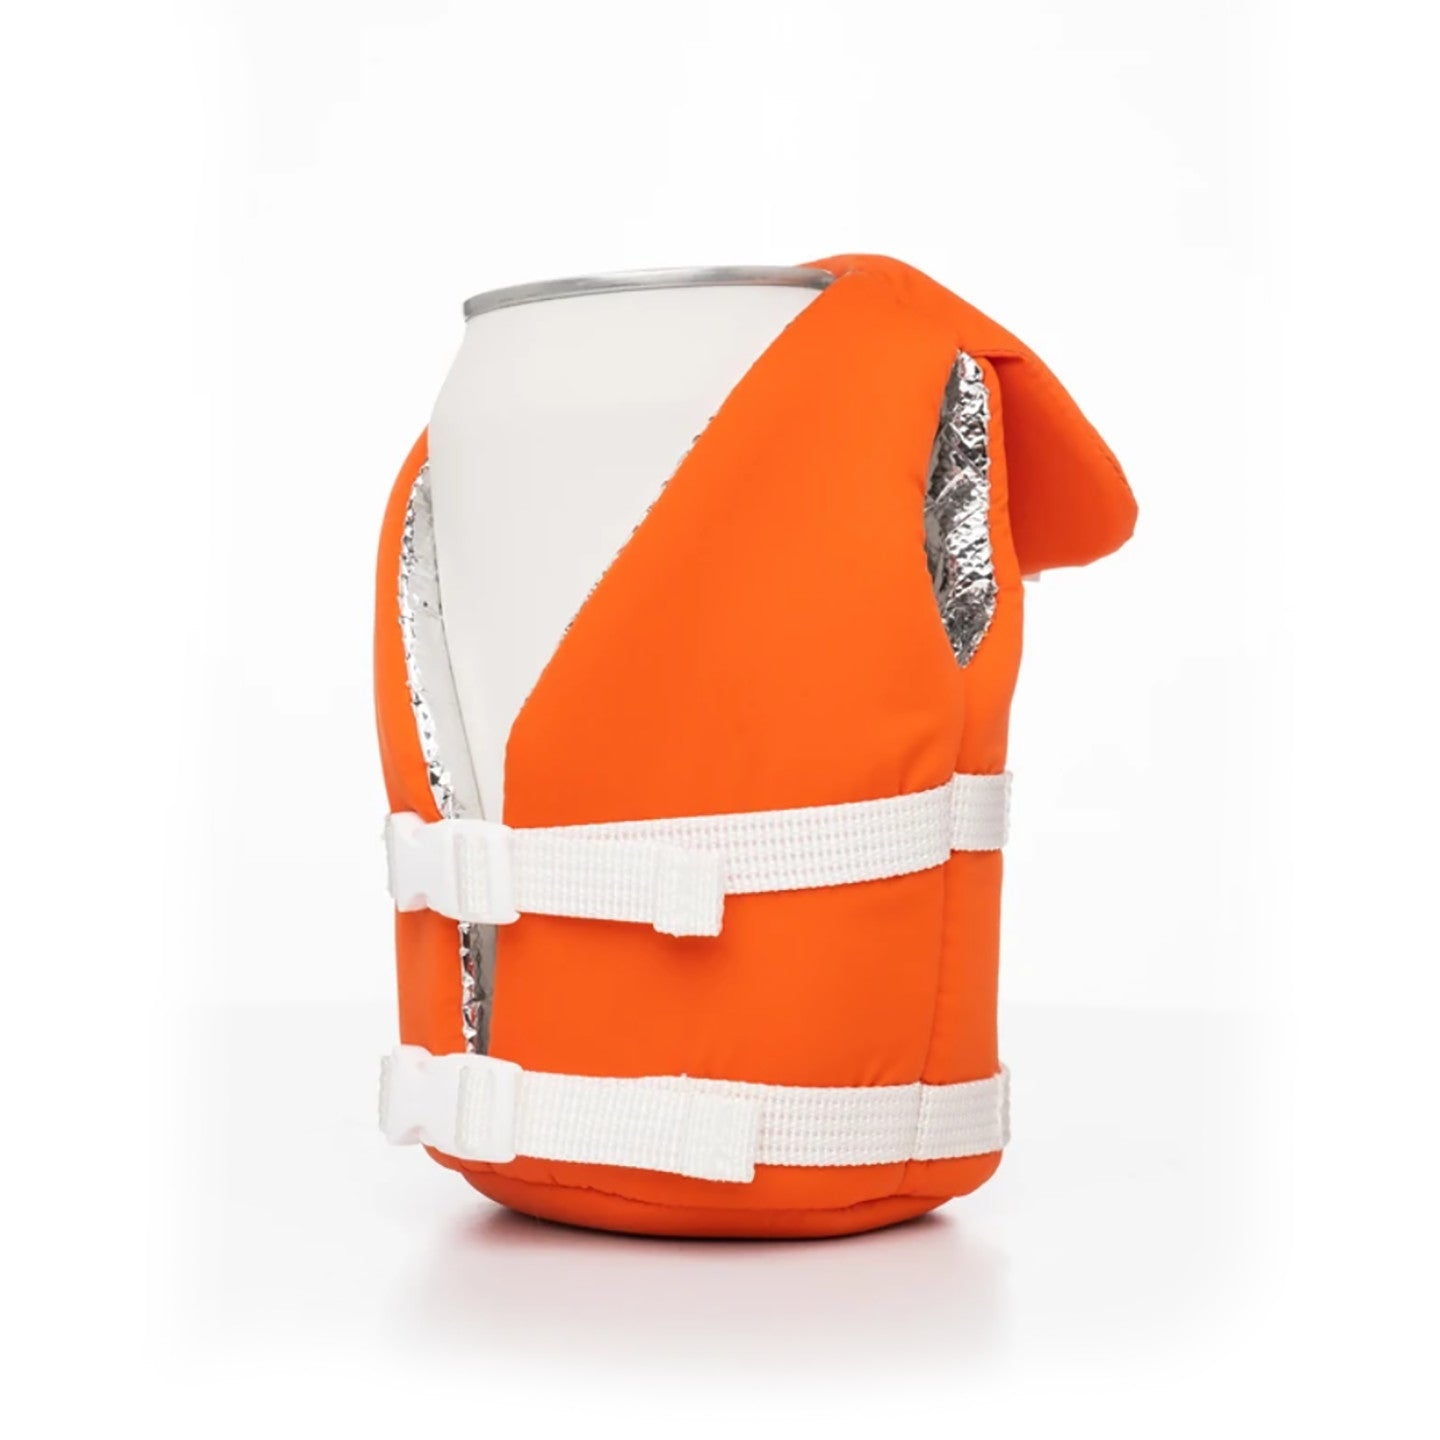 Beverage Life Vest, Vintage Orange - Surf, Wind and Fire